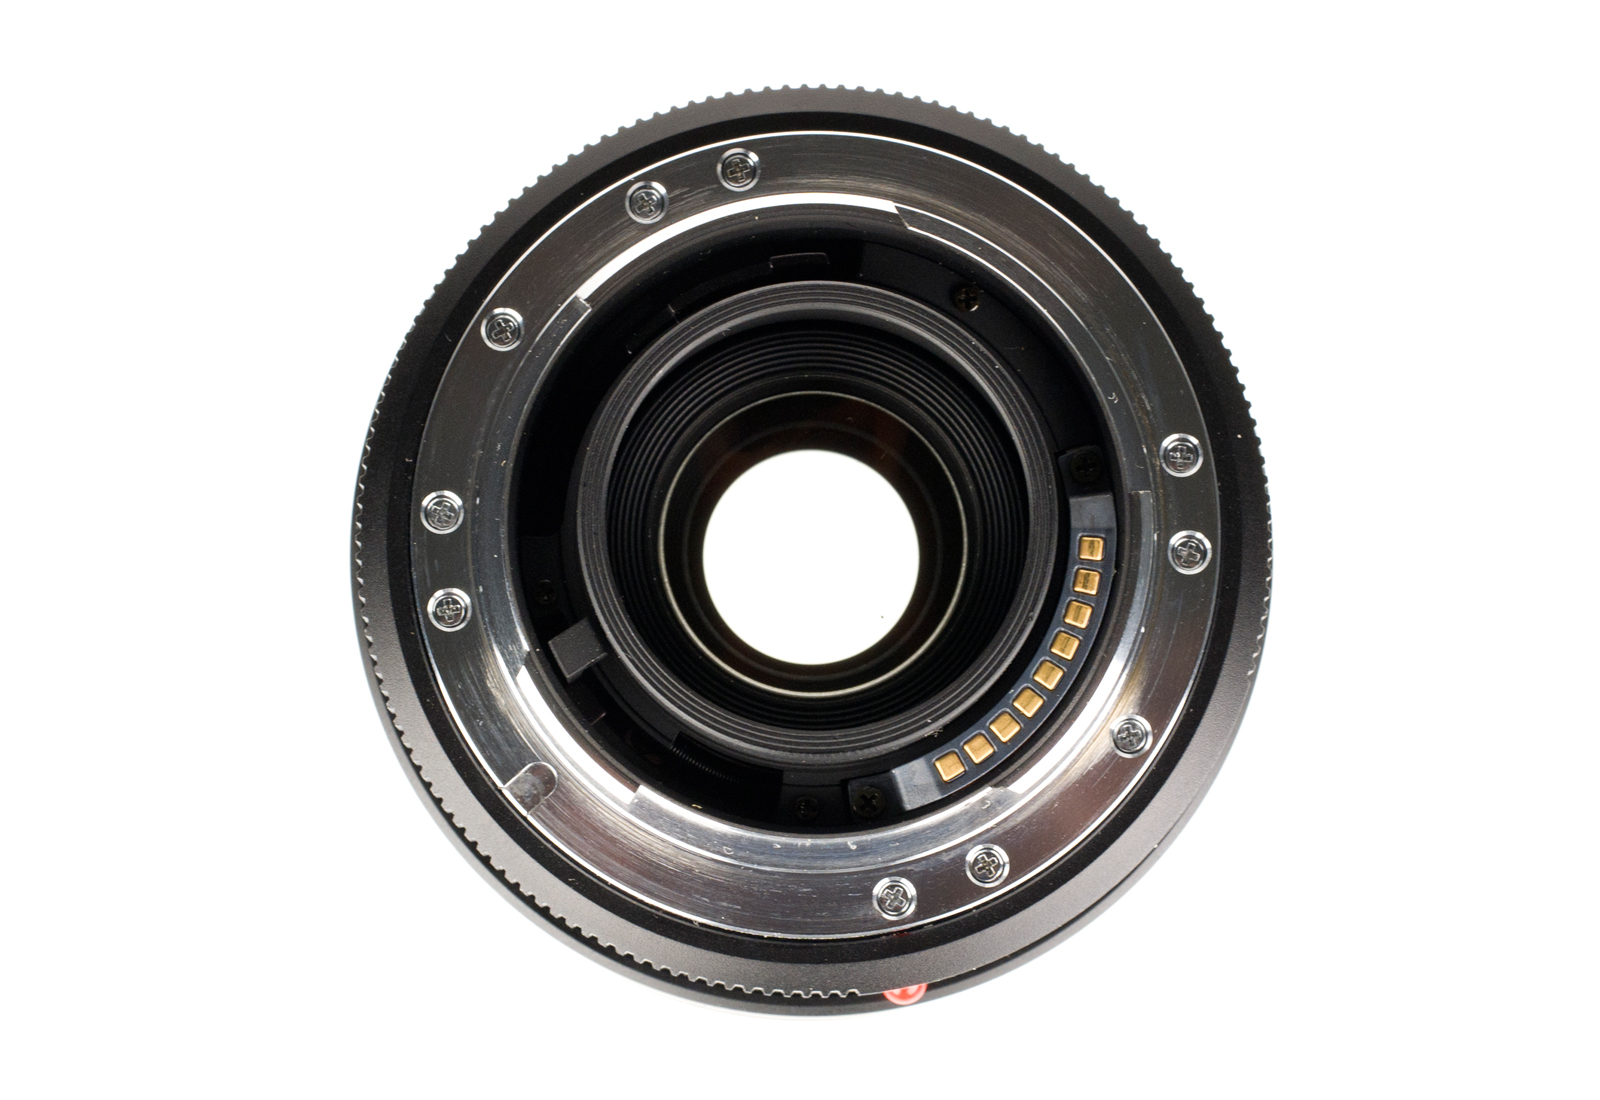 Leica Vario-Elmar-R 1:3,5-4,5/28-70mm ROM, black 11364